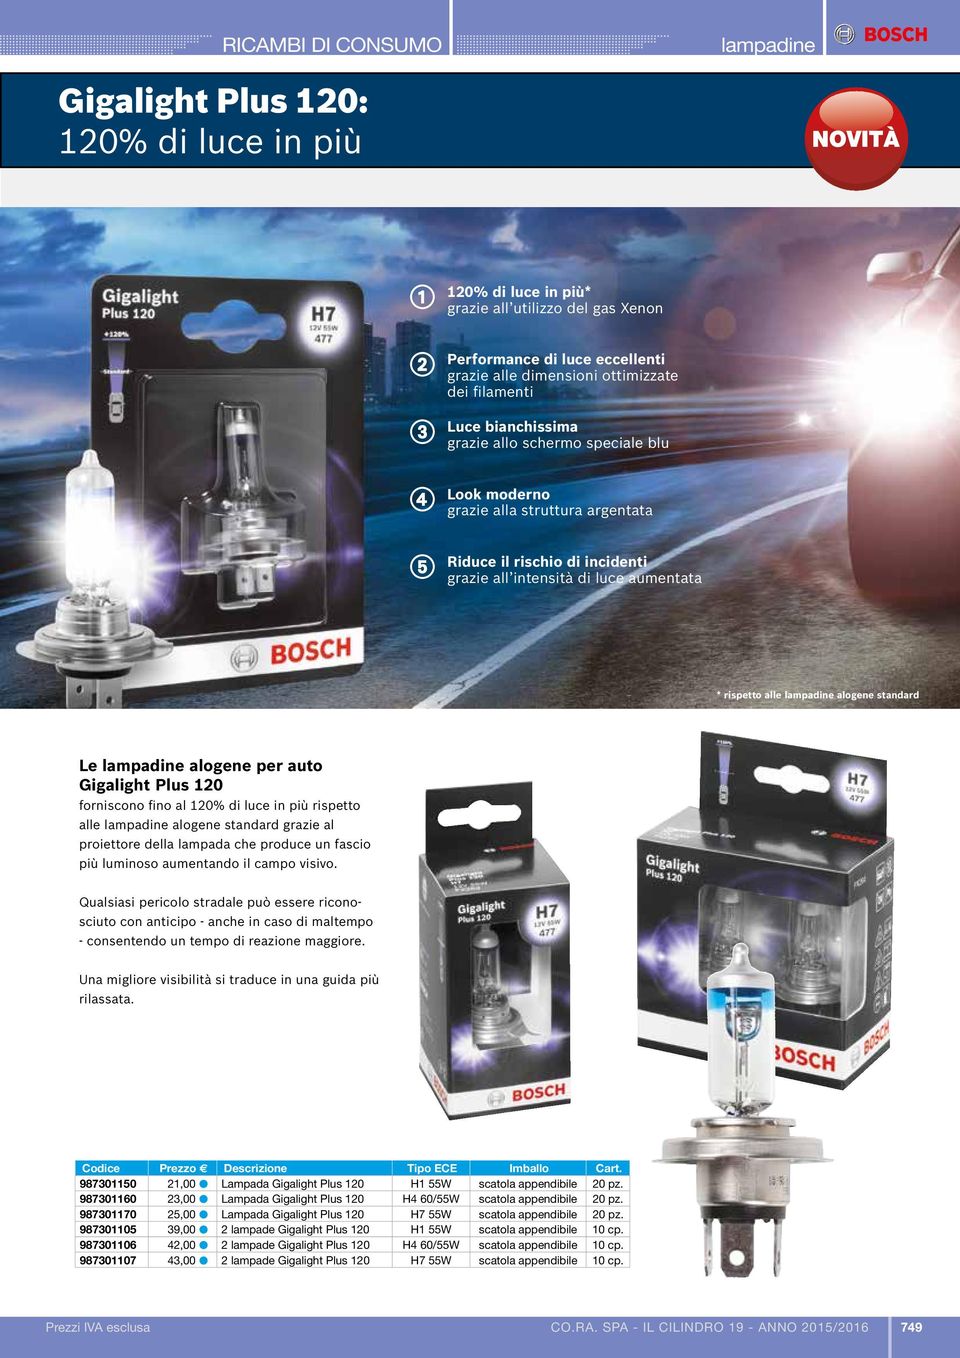 standard Le alogene per auto Gigalight Plus 120 forniscono fino al 120% di luce in più rispetto alle alogene standard grazie al proiettore della lampada che produce un fascio più luminoso aumentando